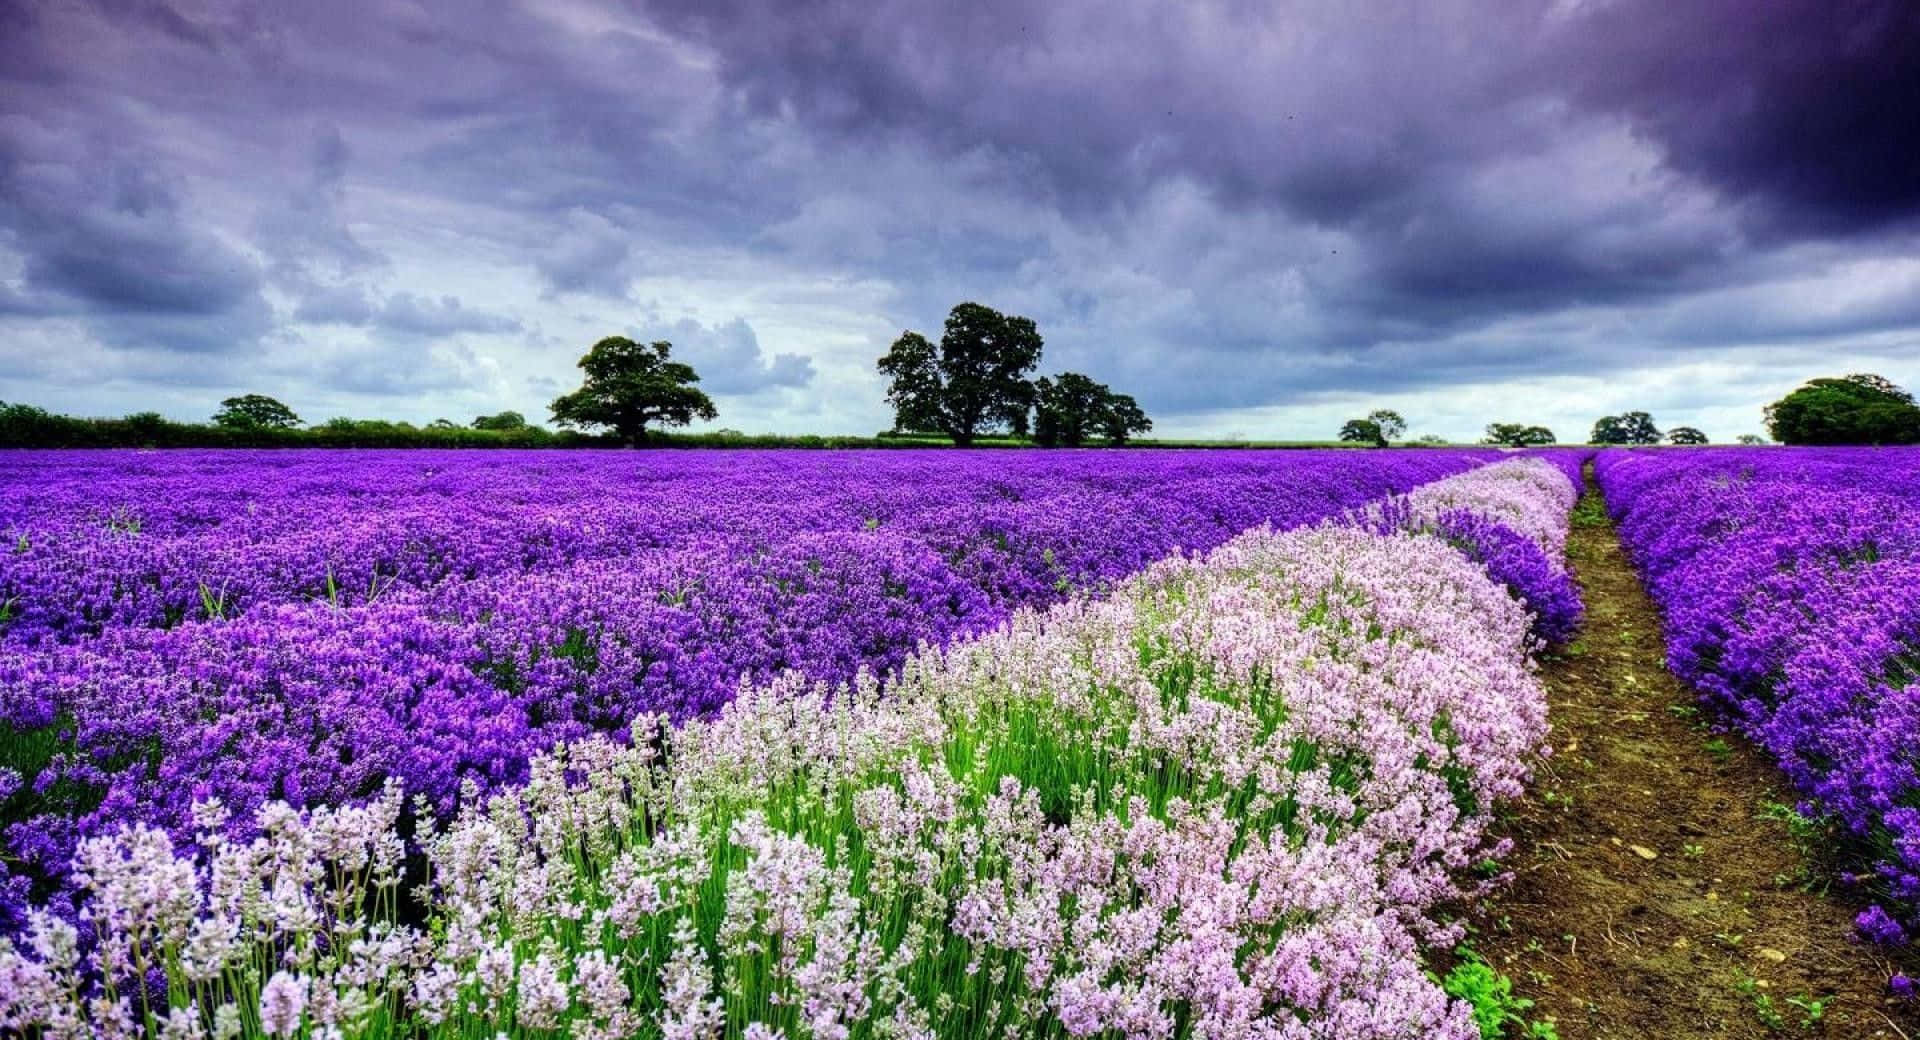 Enchanting Purple Flowers Bloom in a Serene Field